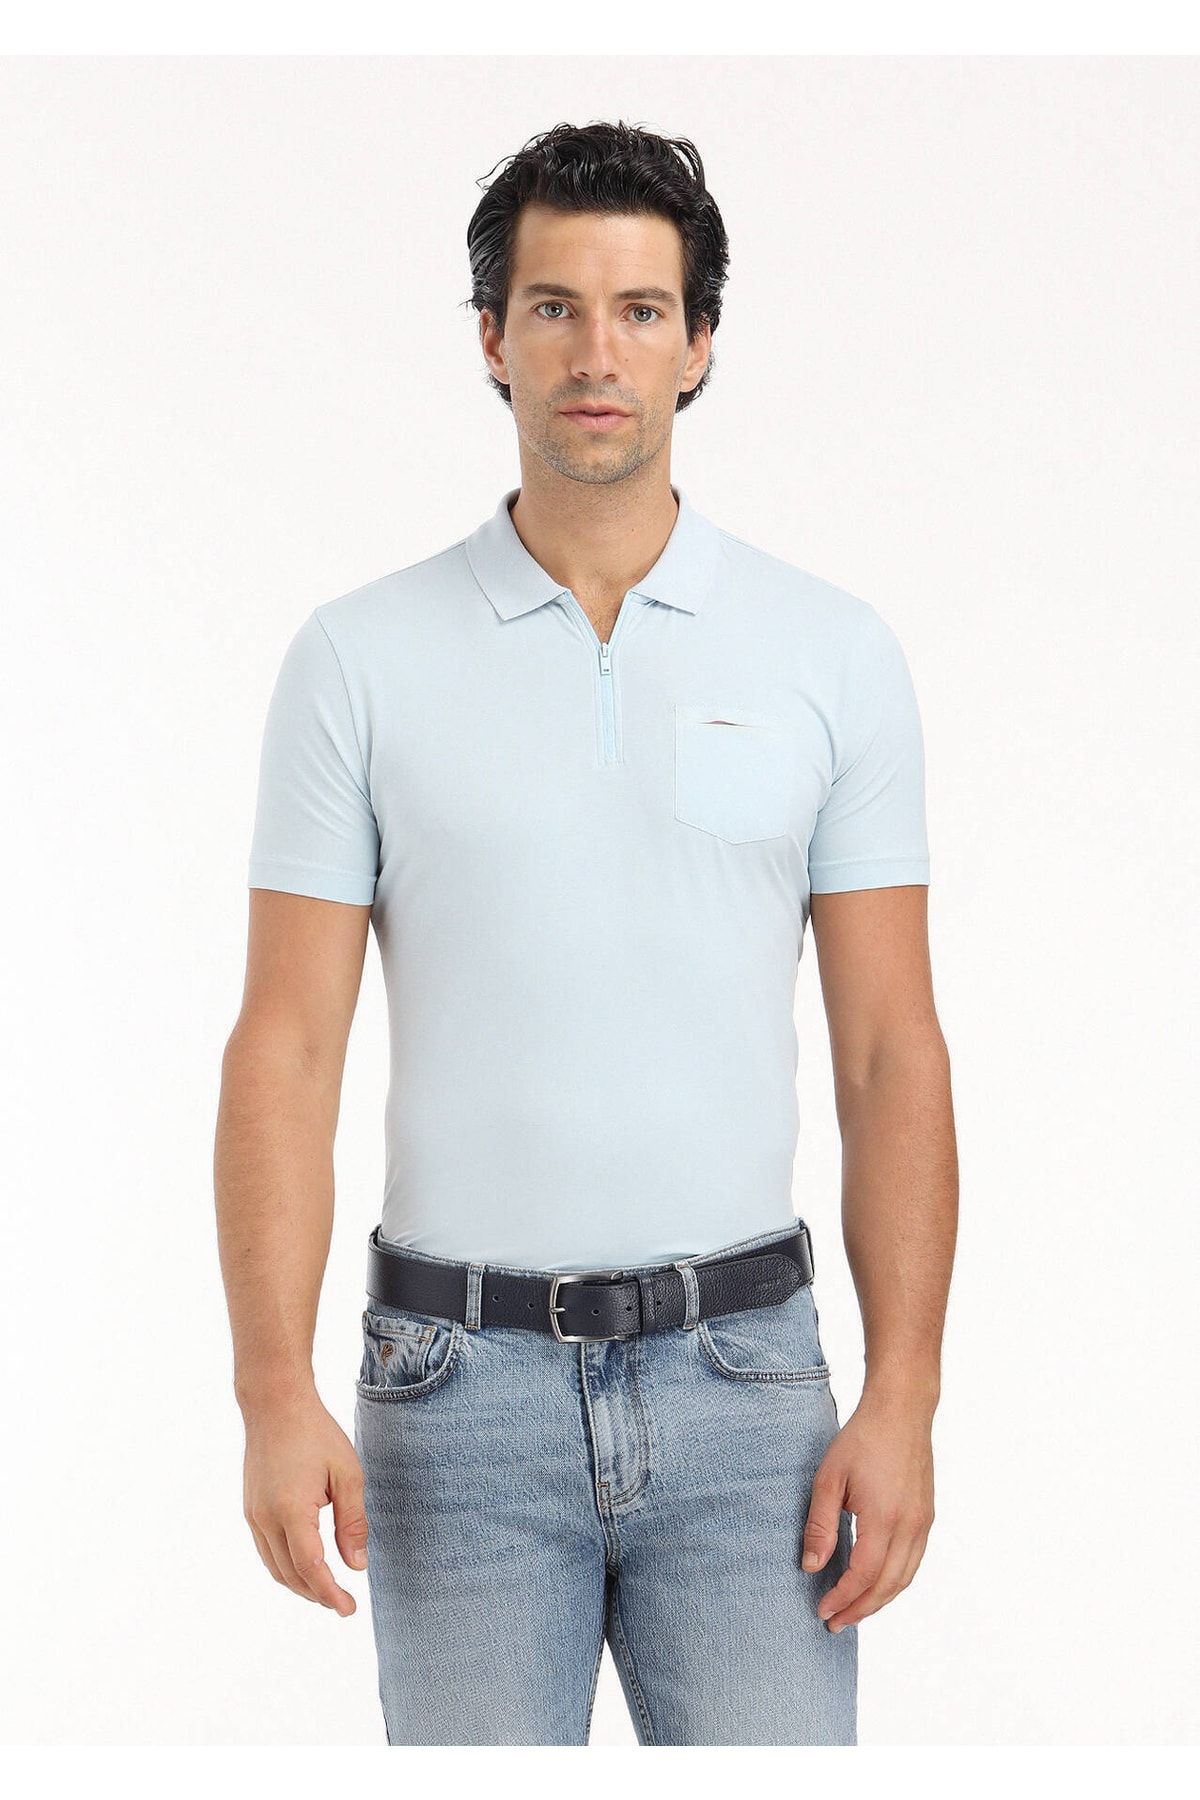 Ramsey Açık Mavi Düz Polo Yaka Pamuk Karışımlı T-shirt